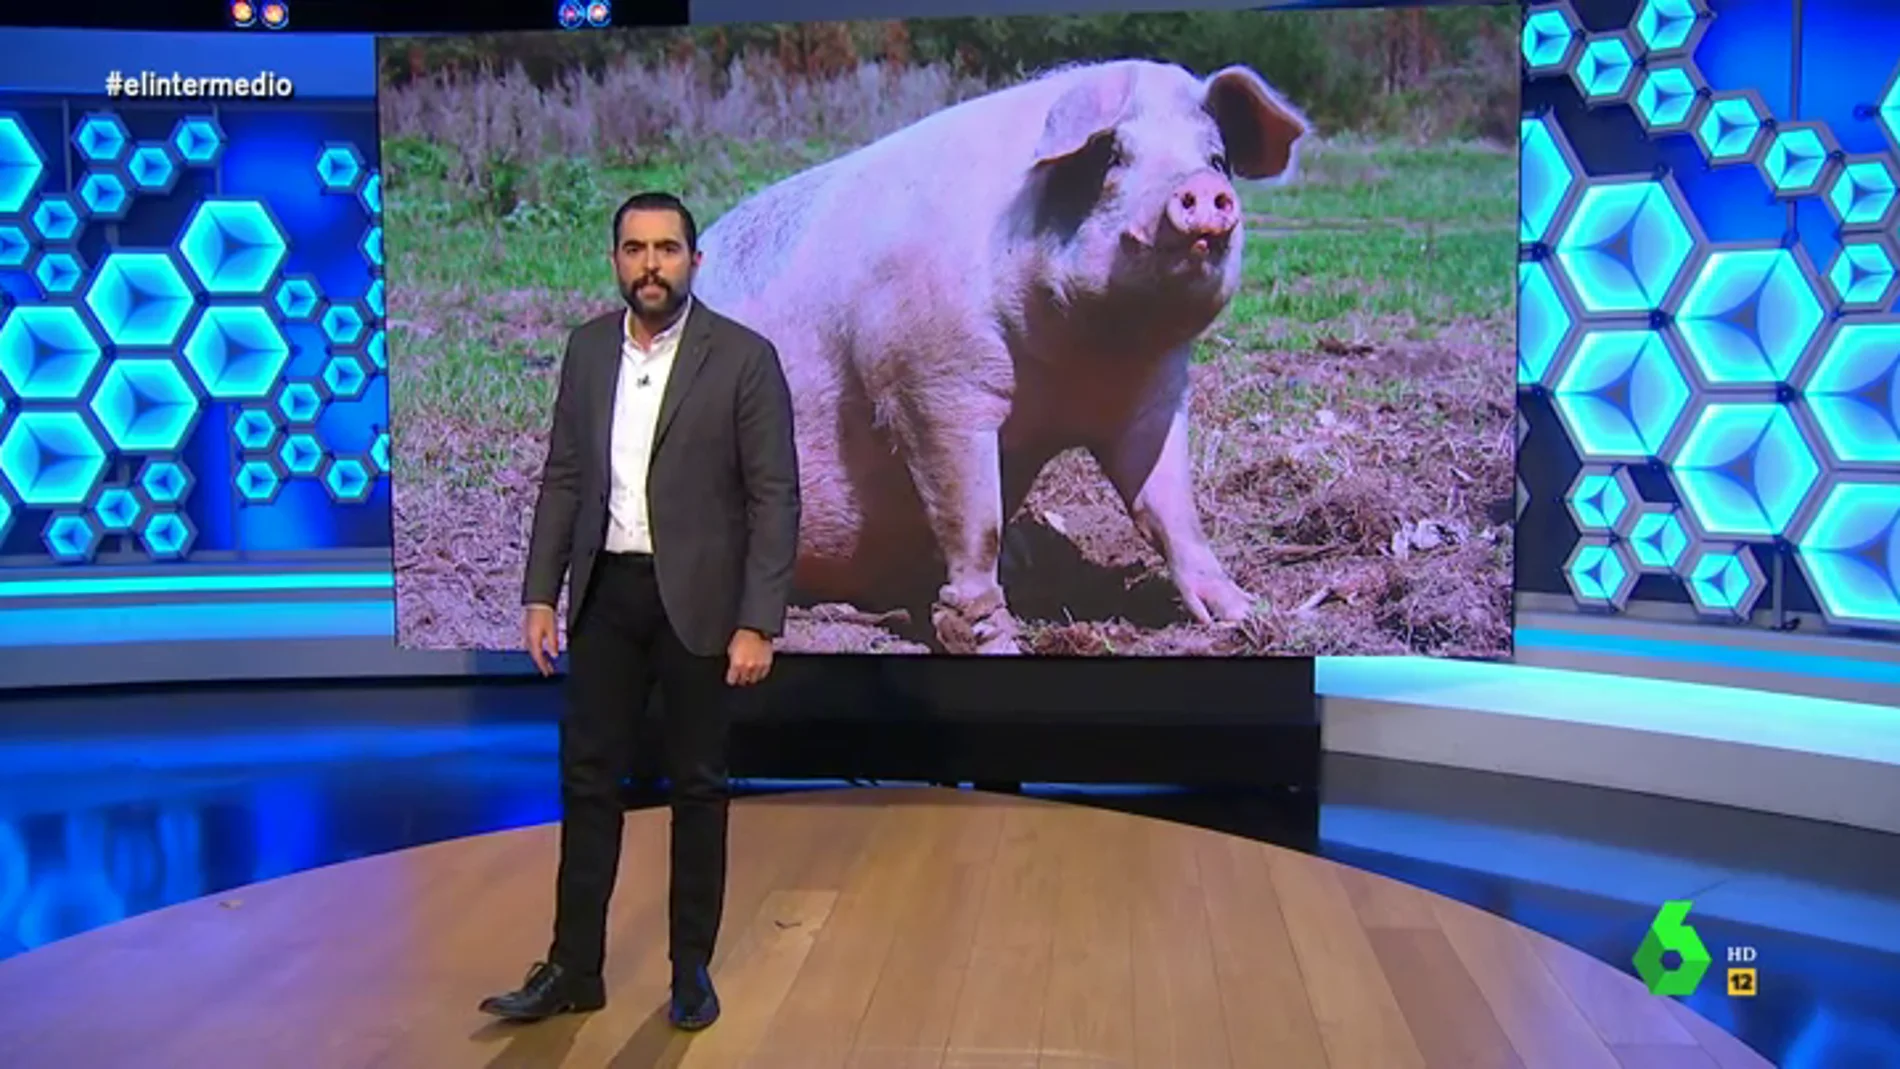 La nueva gripe porcina que podría desencadenar en otra pandemia 'asusta' a Dani Mateo: "¡No hombre, los cerdos no!"